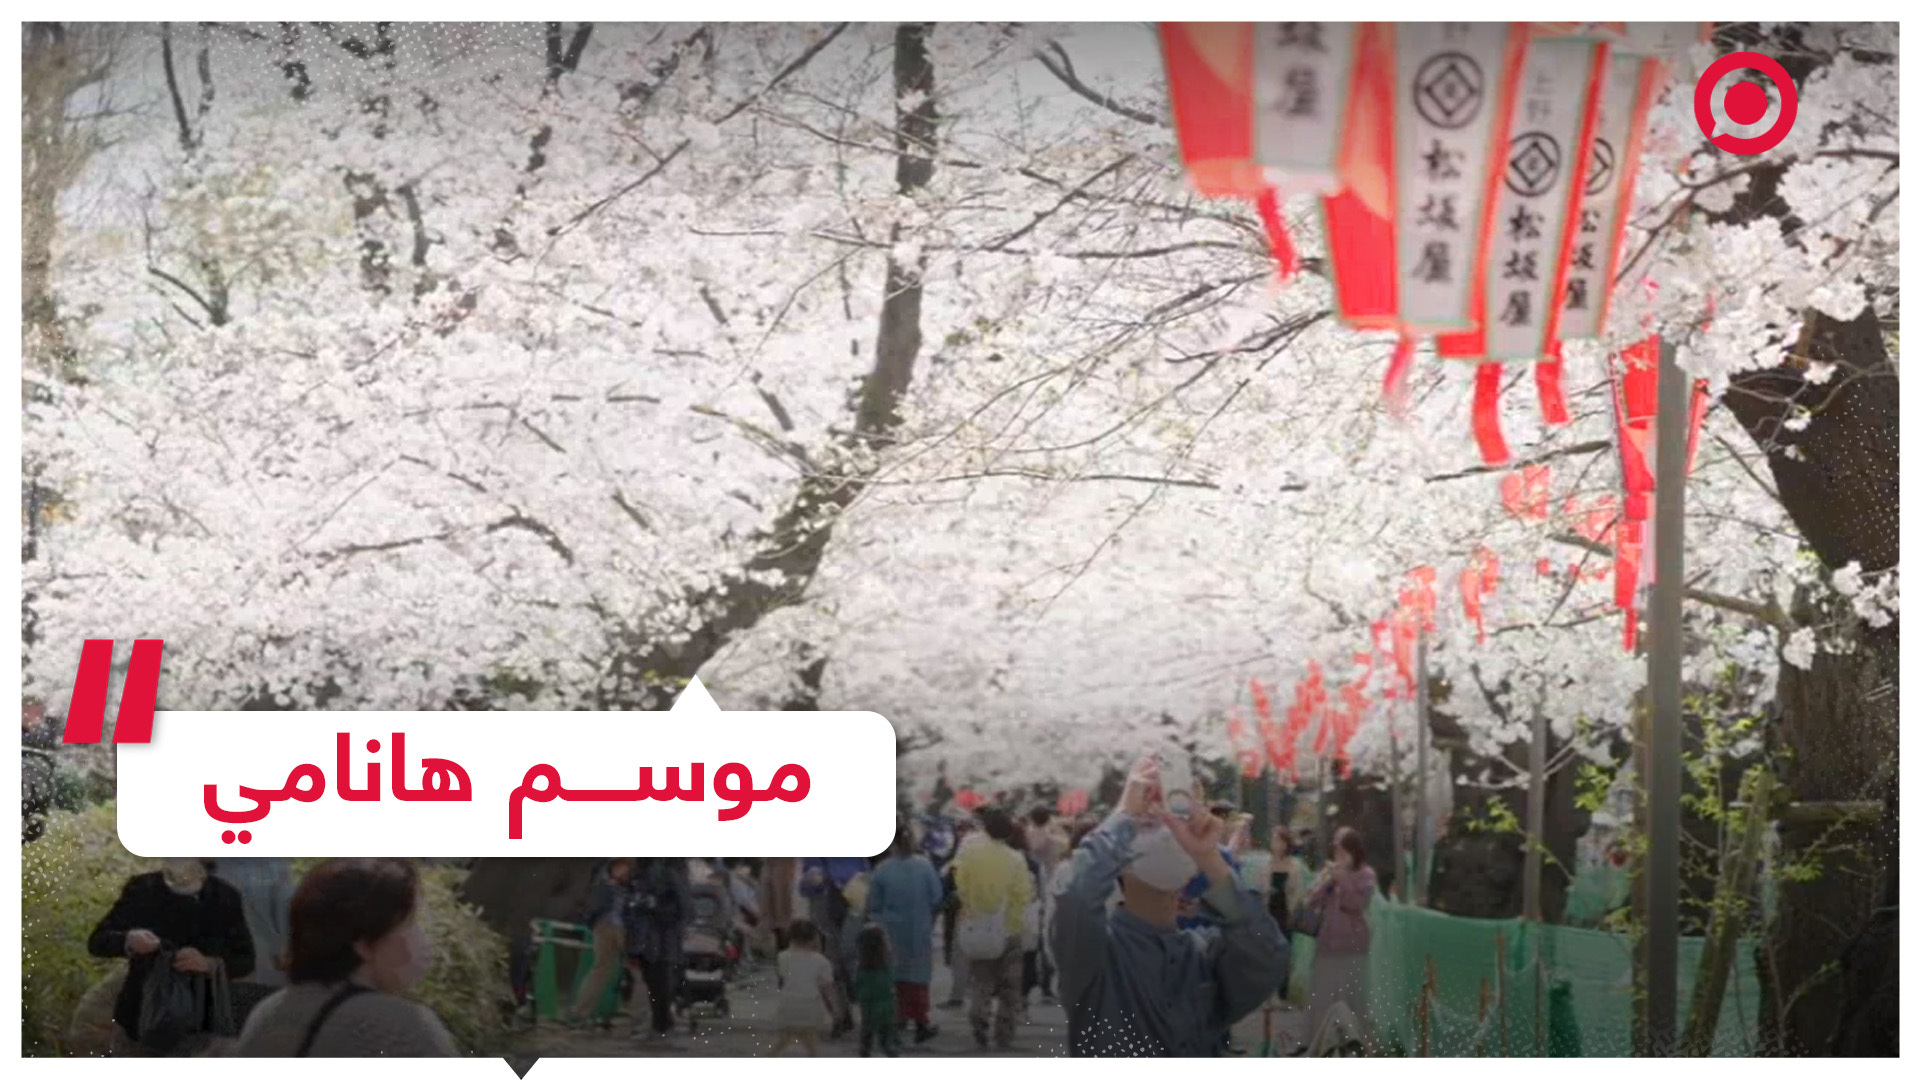 اليابانيون يستمتعون بأزهار أشجار الكرز